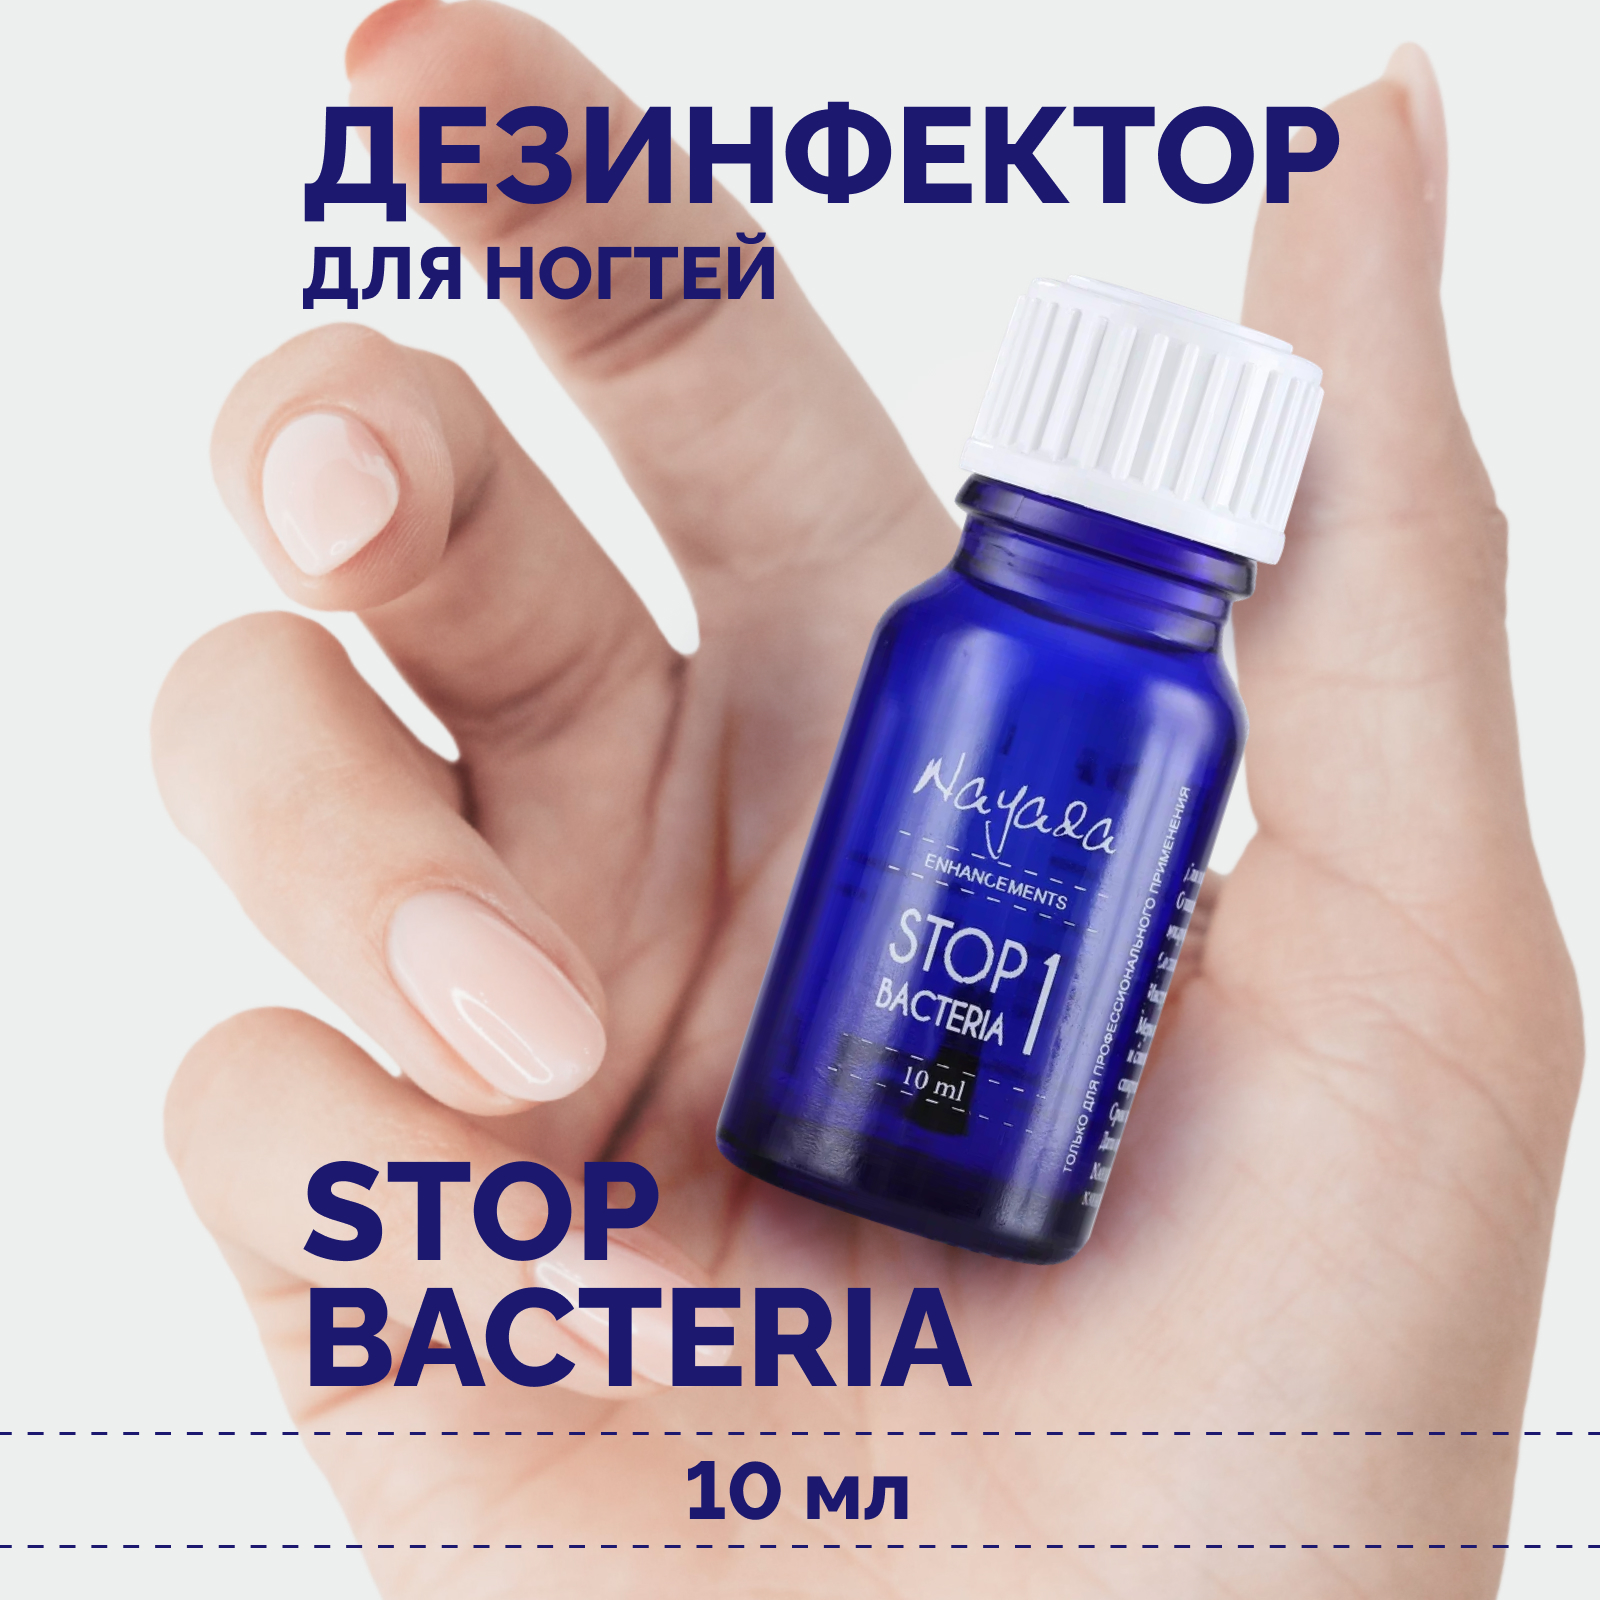 Дезинфектор для ногтей Nayada Стоп бактерия профилактика грибка и бактерий, 10 мл дезинфецирующее средство для рук saraya alsoft r 120 мл